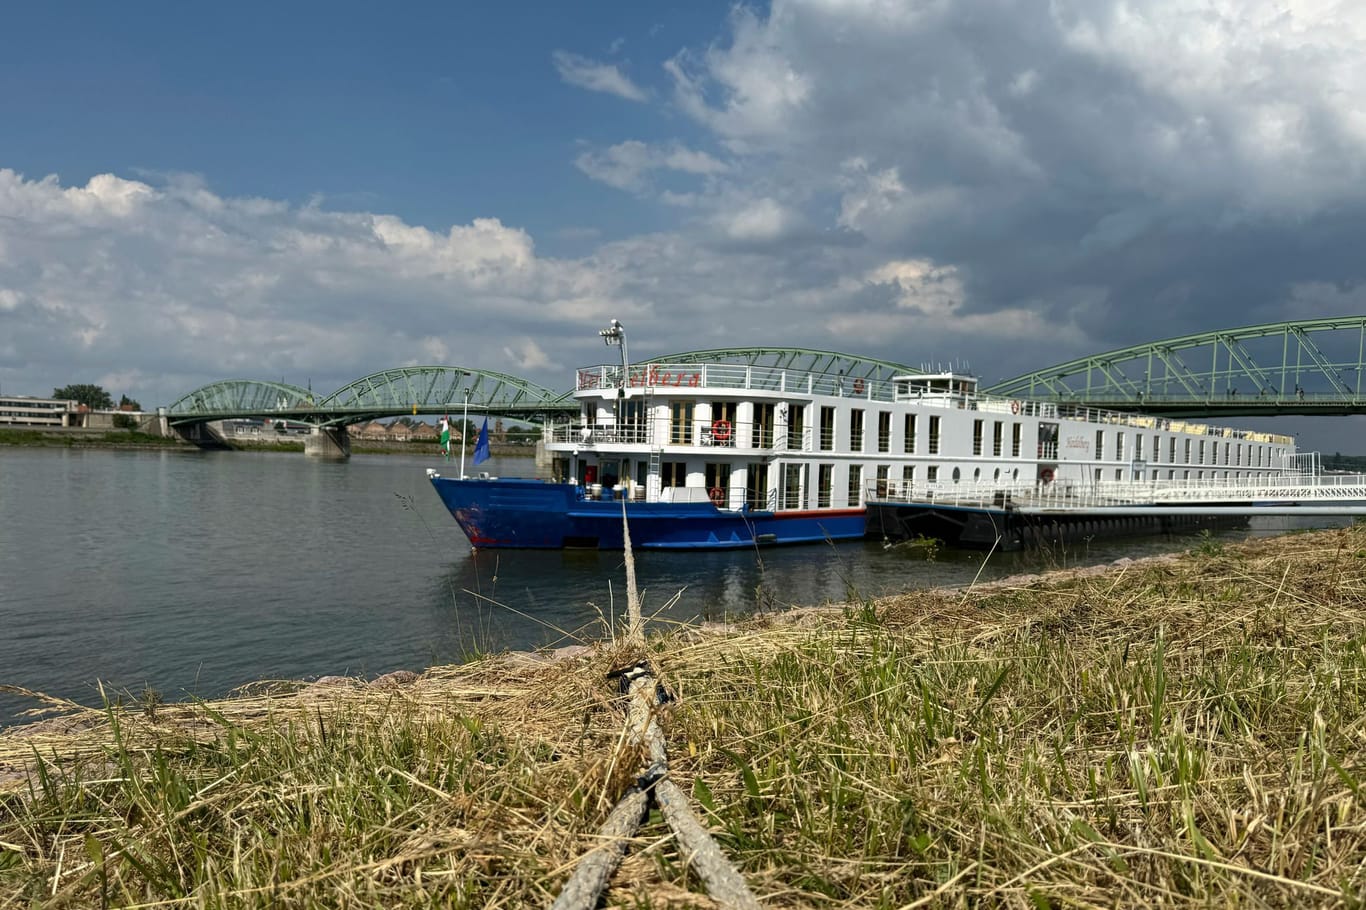 Schäden sind an der Vorderseite des Kreuzfahrtschiffes sichtbar, das in einen Unfall auf der Donau verwickelt war.